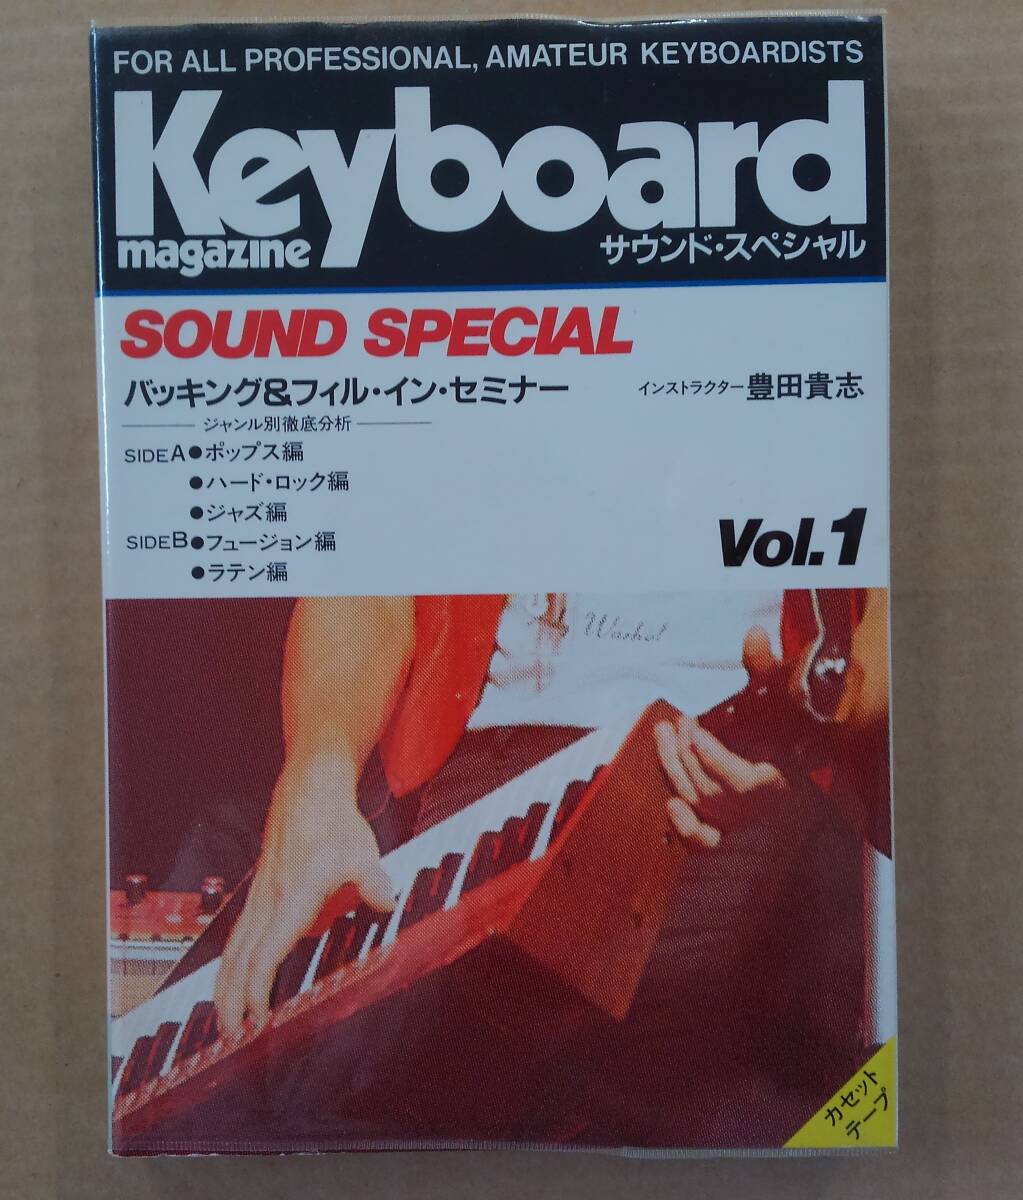 [カセットテープ] Keyboard Magazine キーボード・マガジン・サウンド・スペシャル vol.1-vol.3 3本セット / 適格請求書発行可能 _画像2